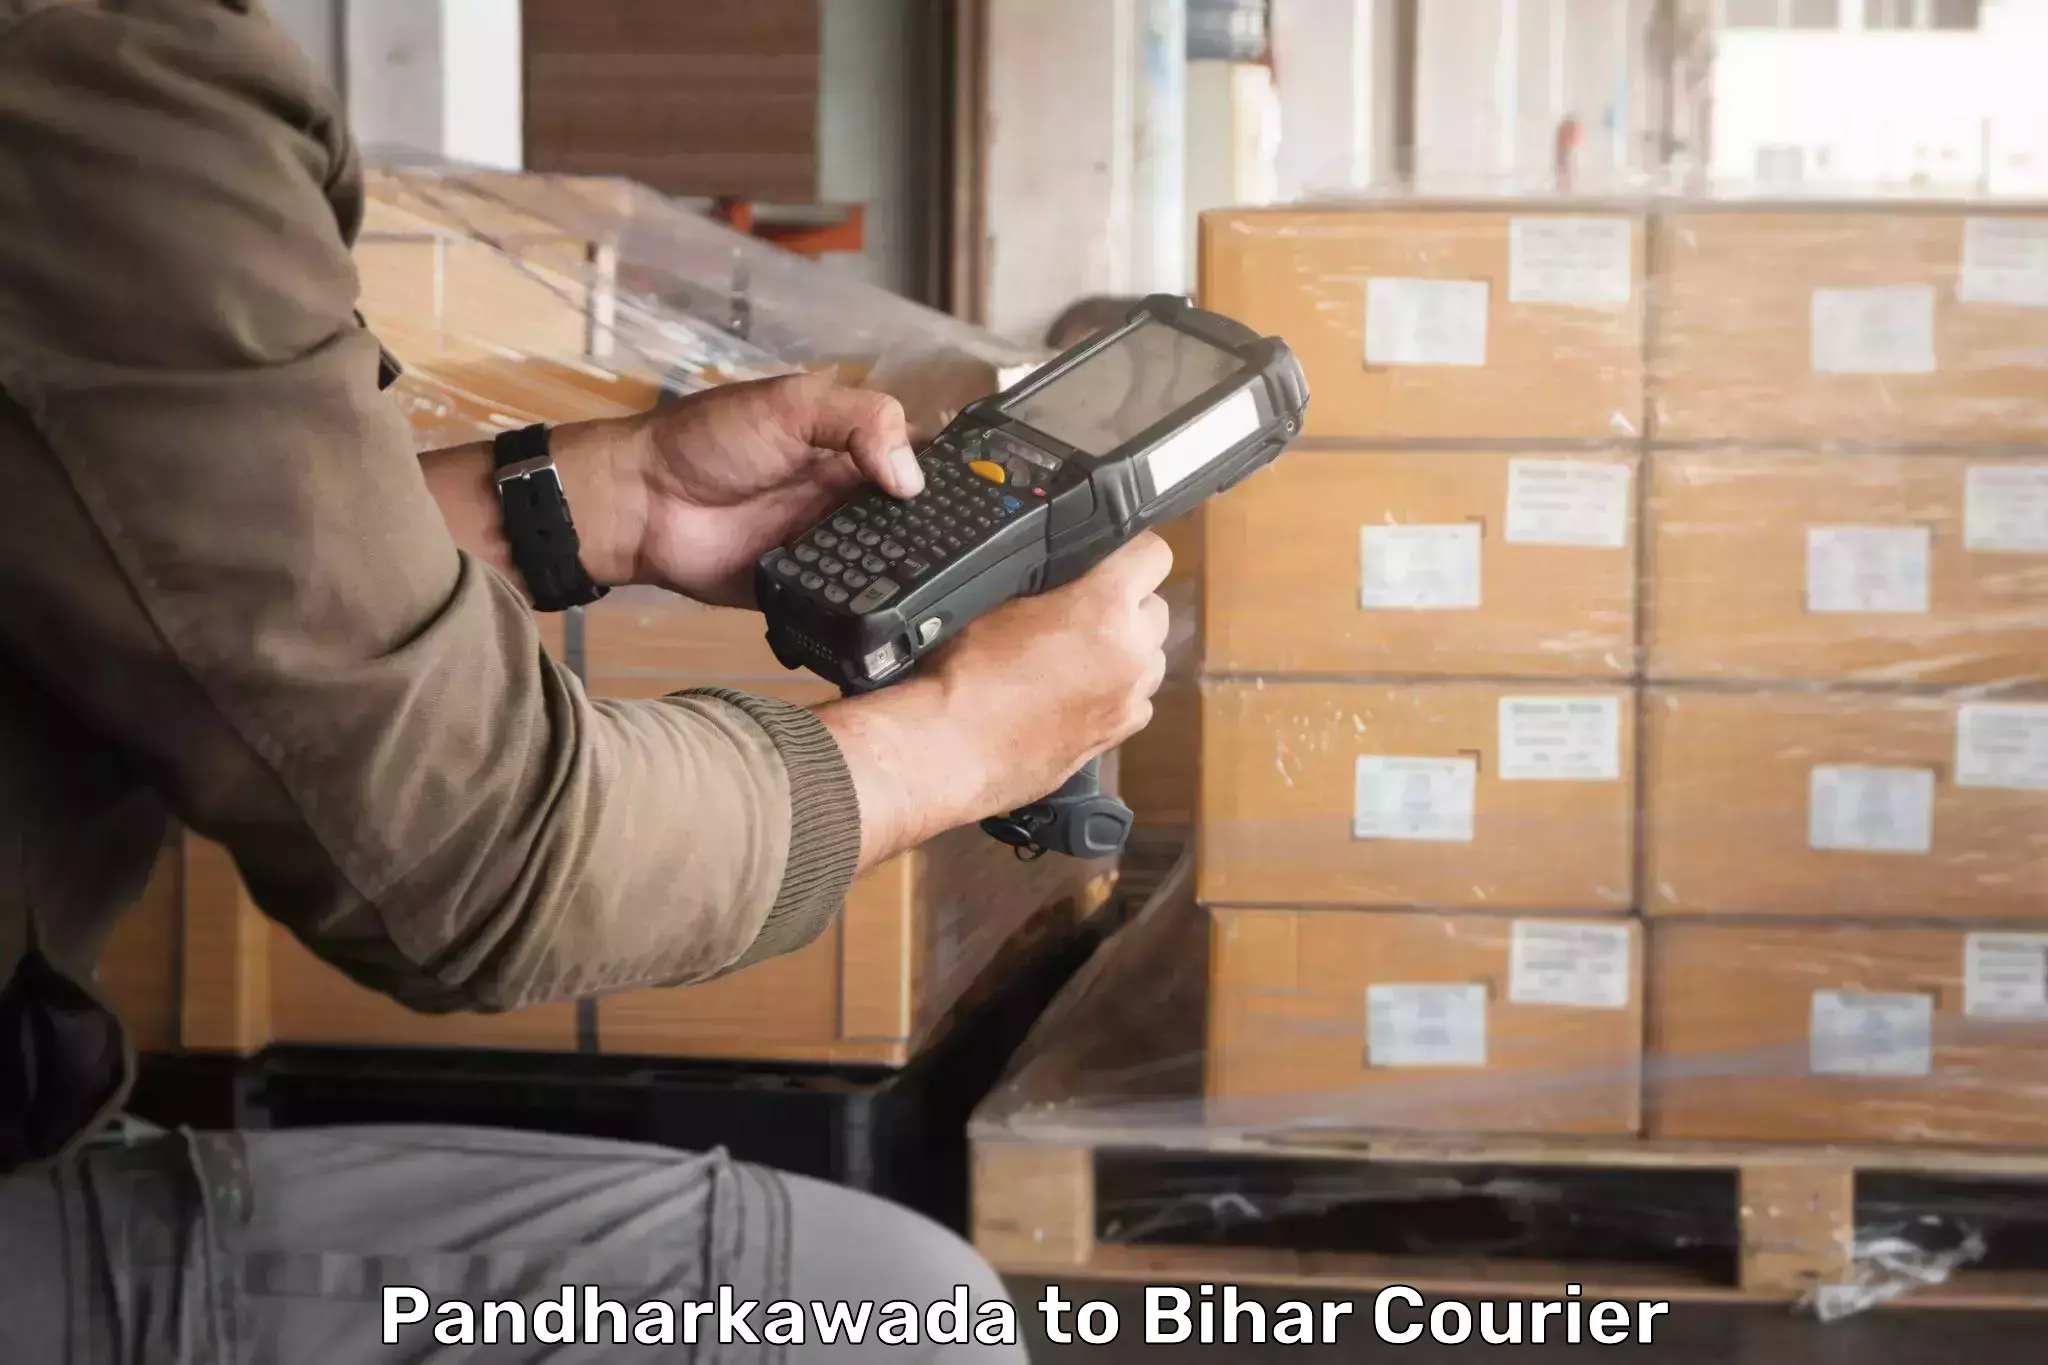 Global freight services Pandharkawada to Bihta